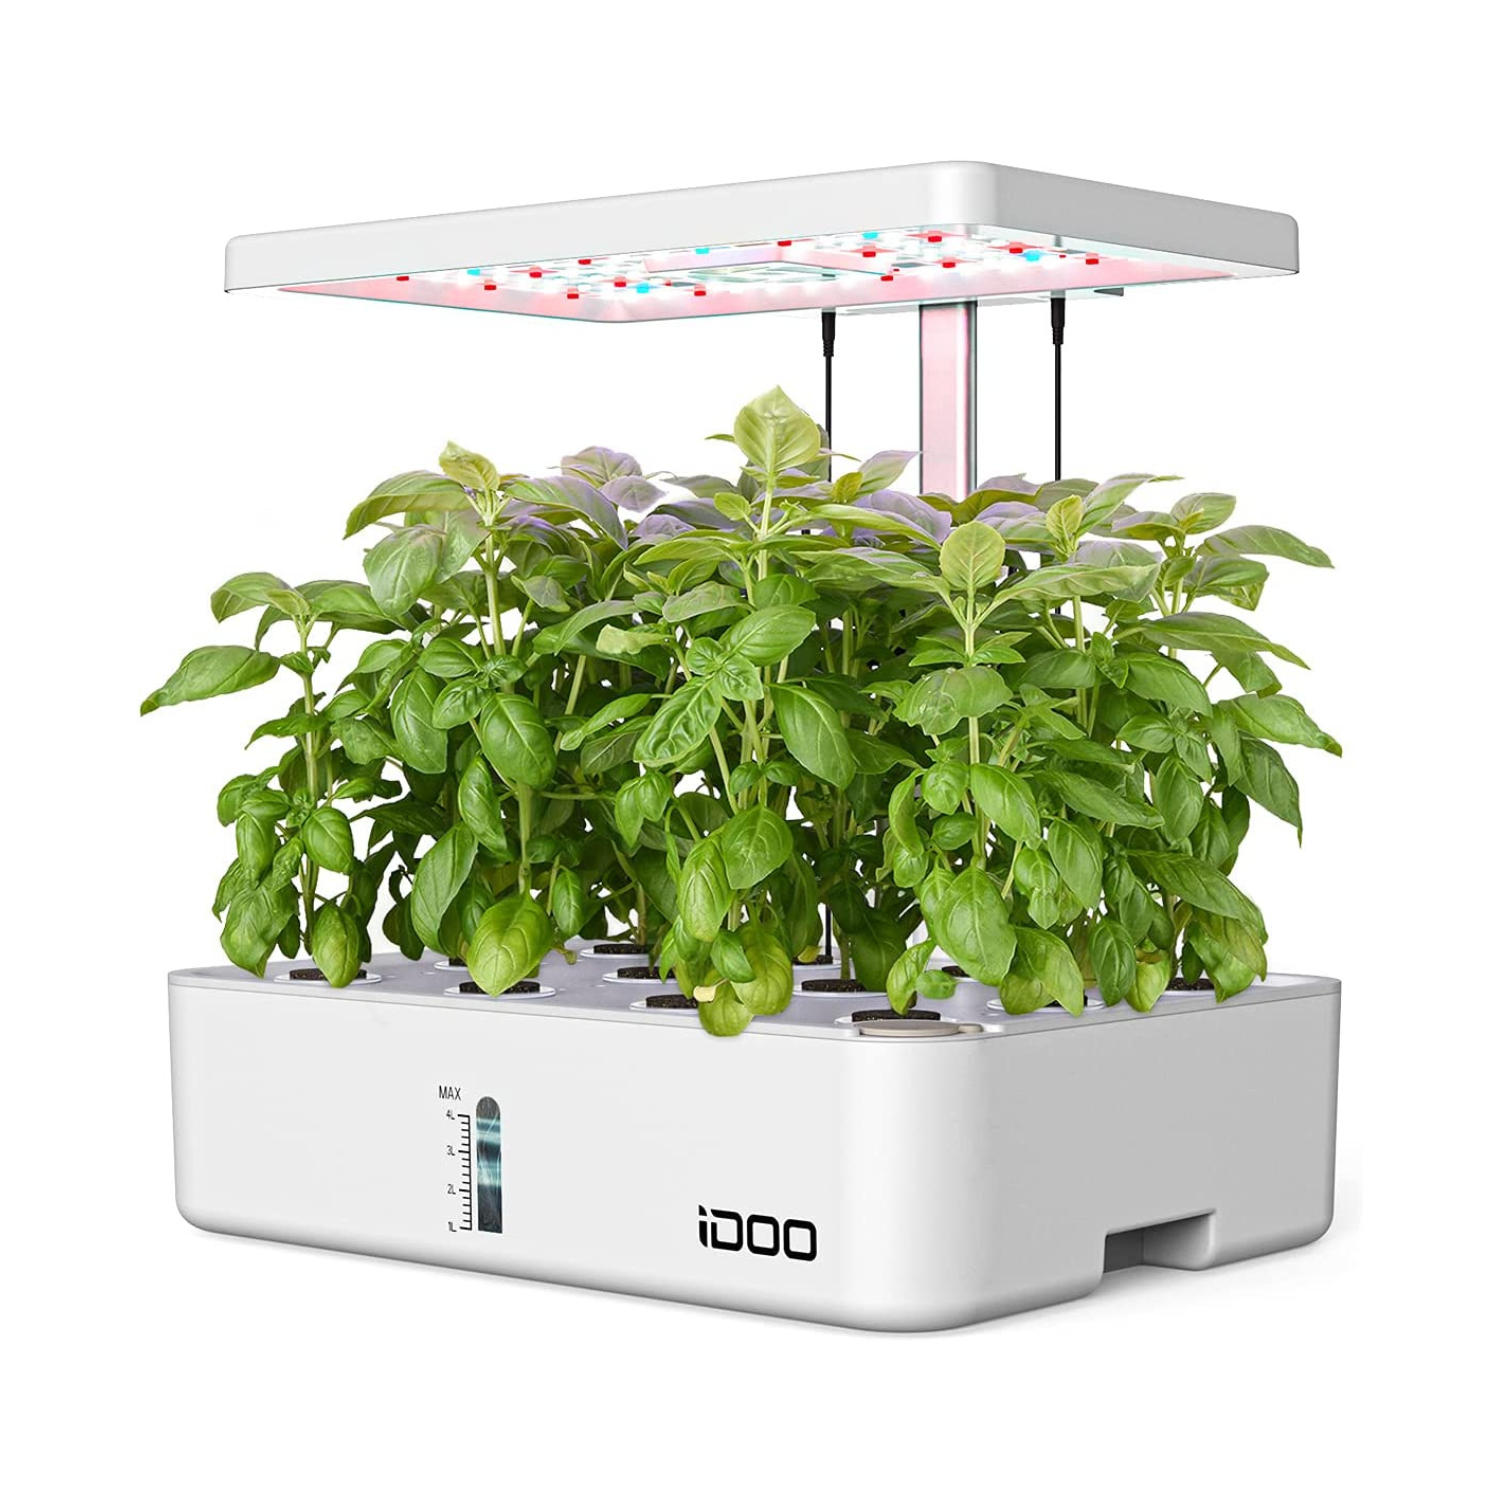 iDOO 12Pods Indoor Herb Garden Kit White - Hydroponic Growing System Hydroponic Growing Systems by idoogroup